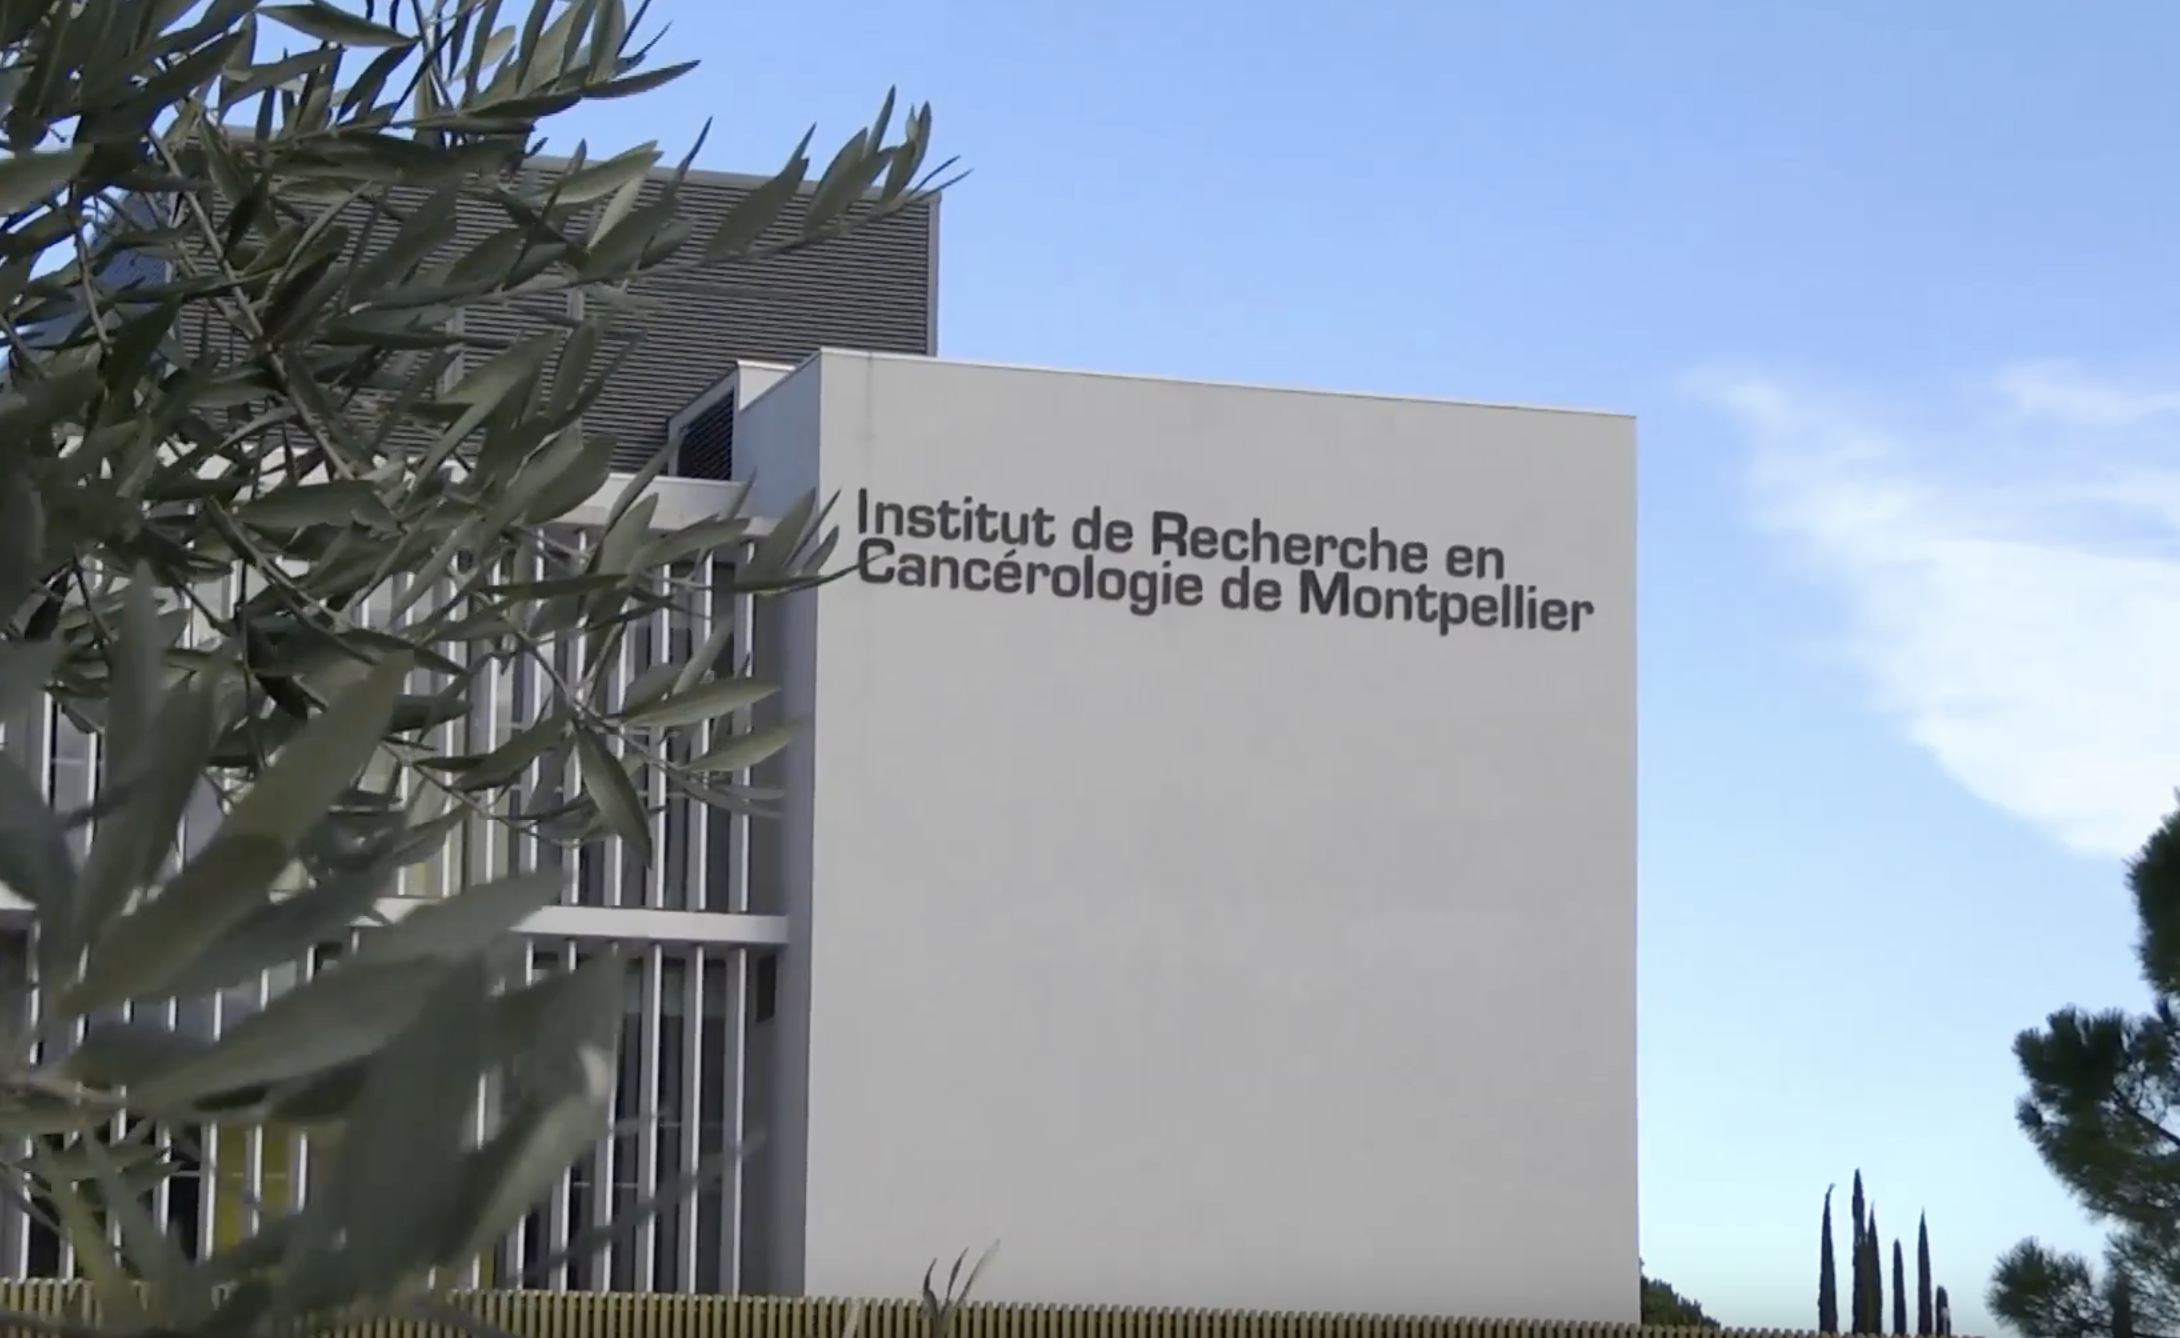 Le CHU de Montpellier et l’ICM entrent au capital de la SATT AxLR pour accélérer le transfert de technologie dans le domaine de la santé